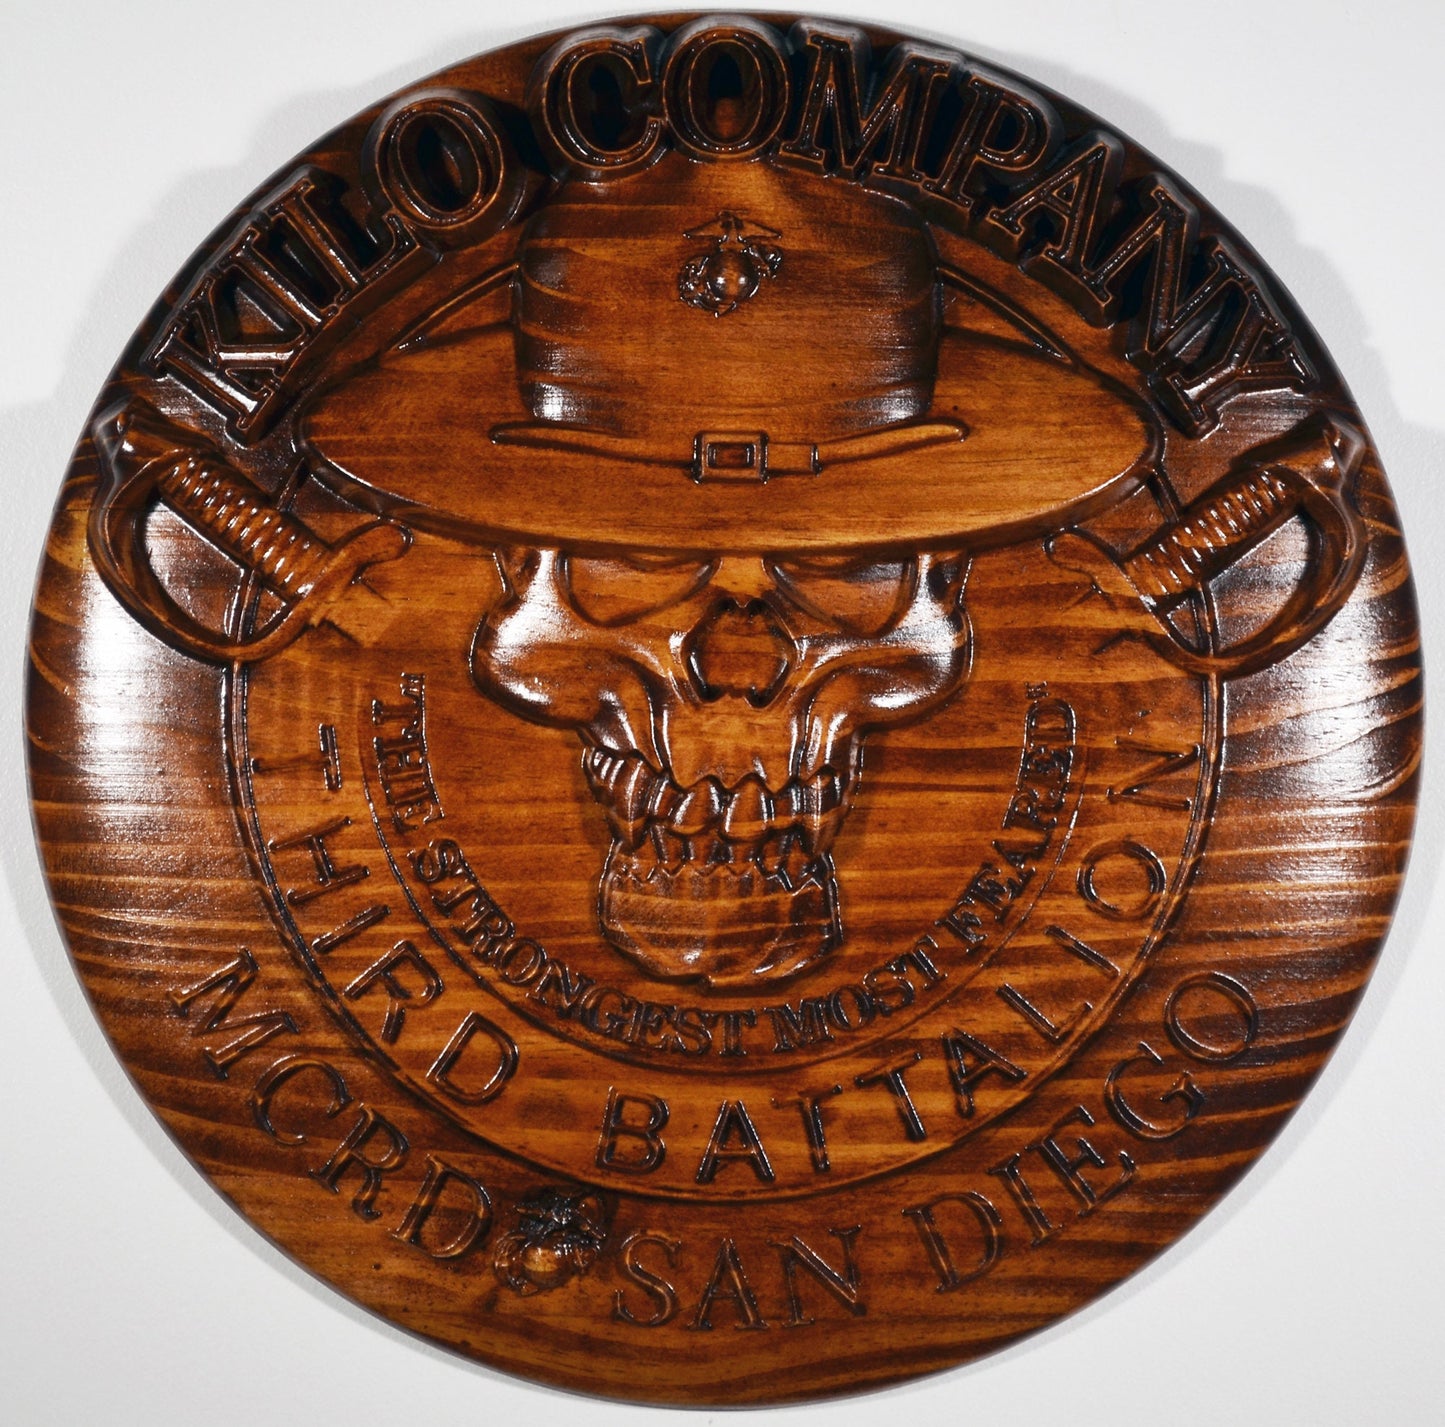 USMC 3rd Recruit Training Battalion Kilo Co, USMC, 3d wood CNC, military plaque